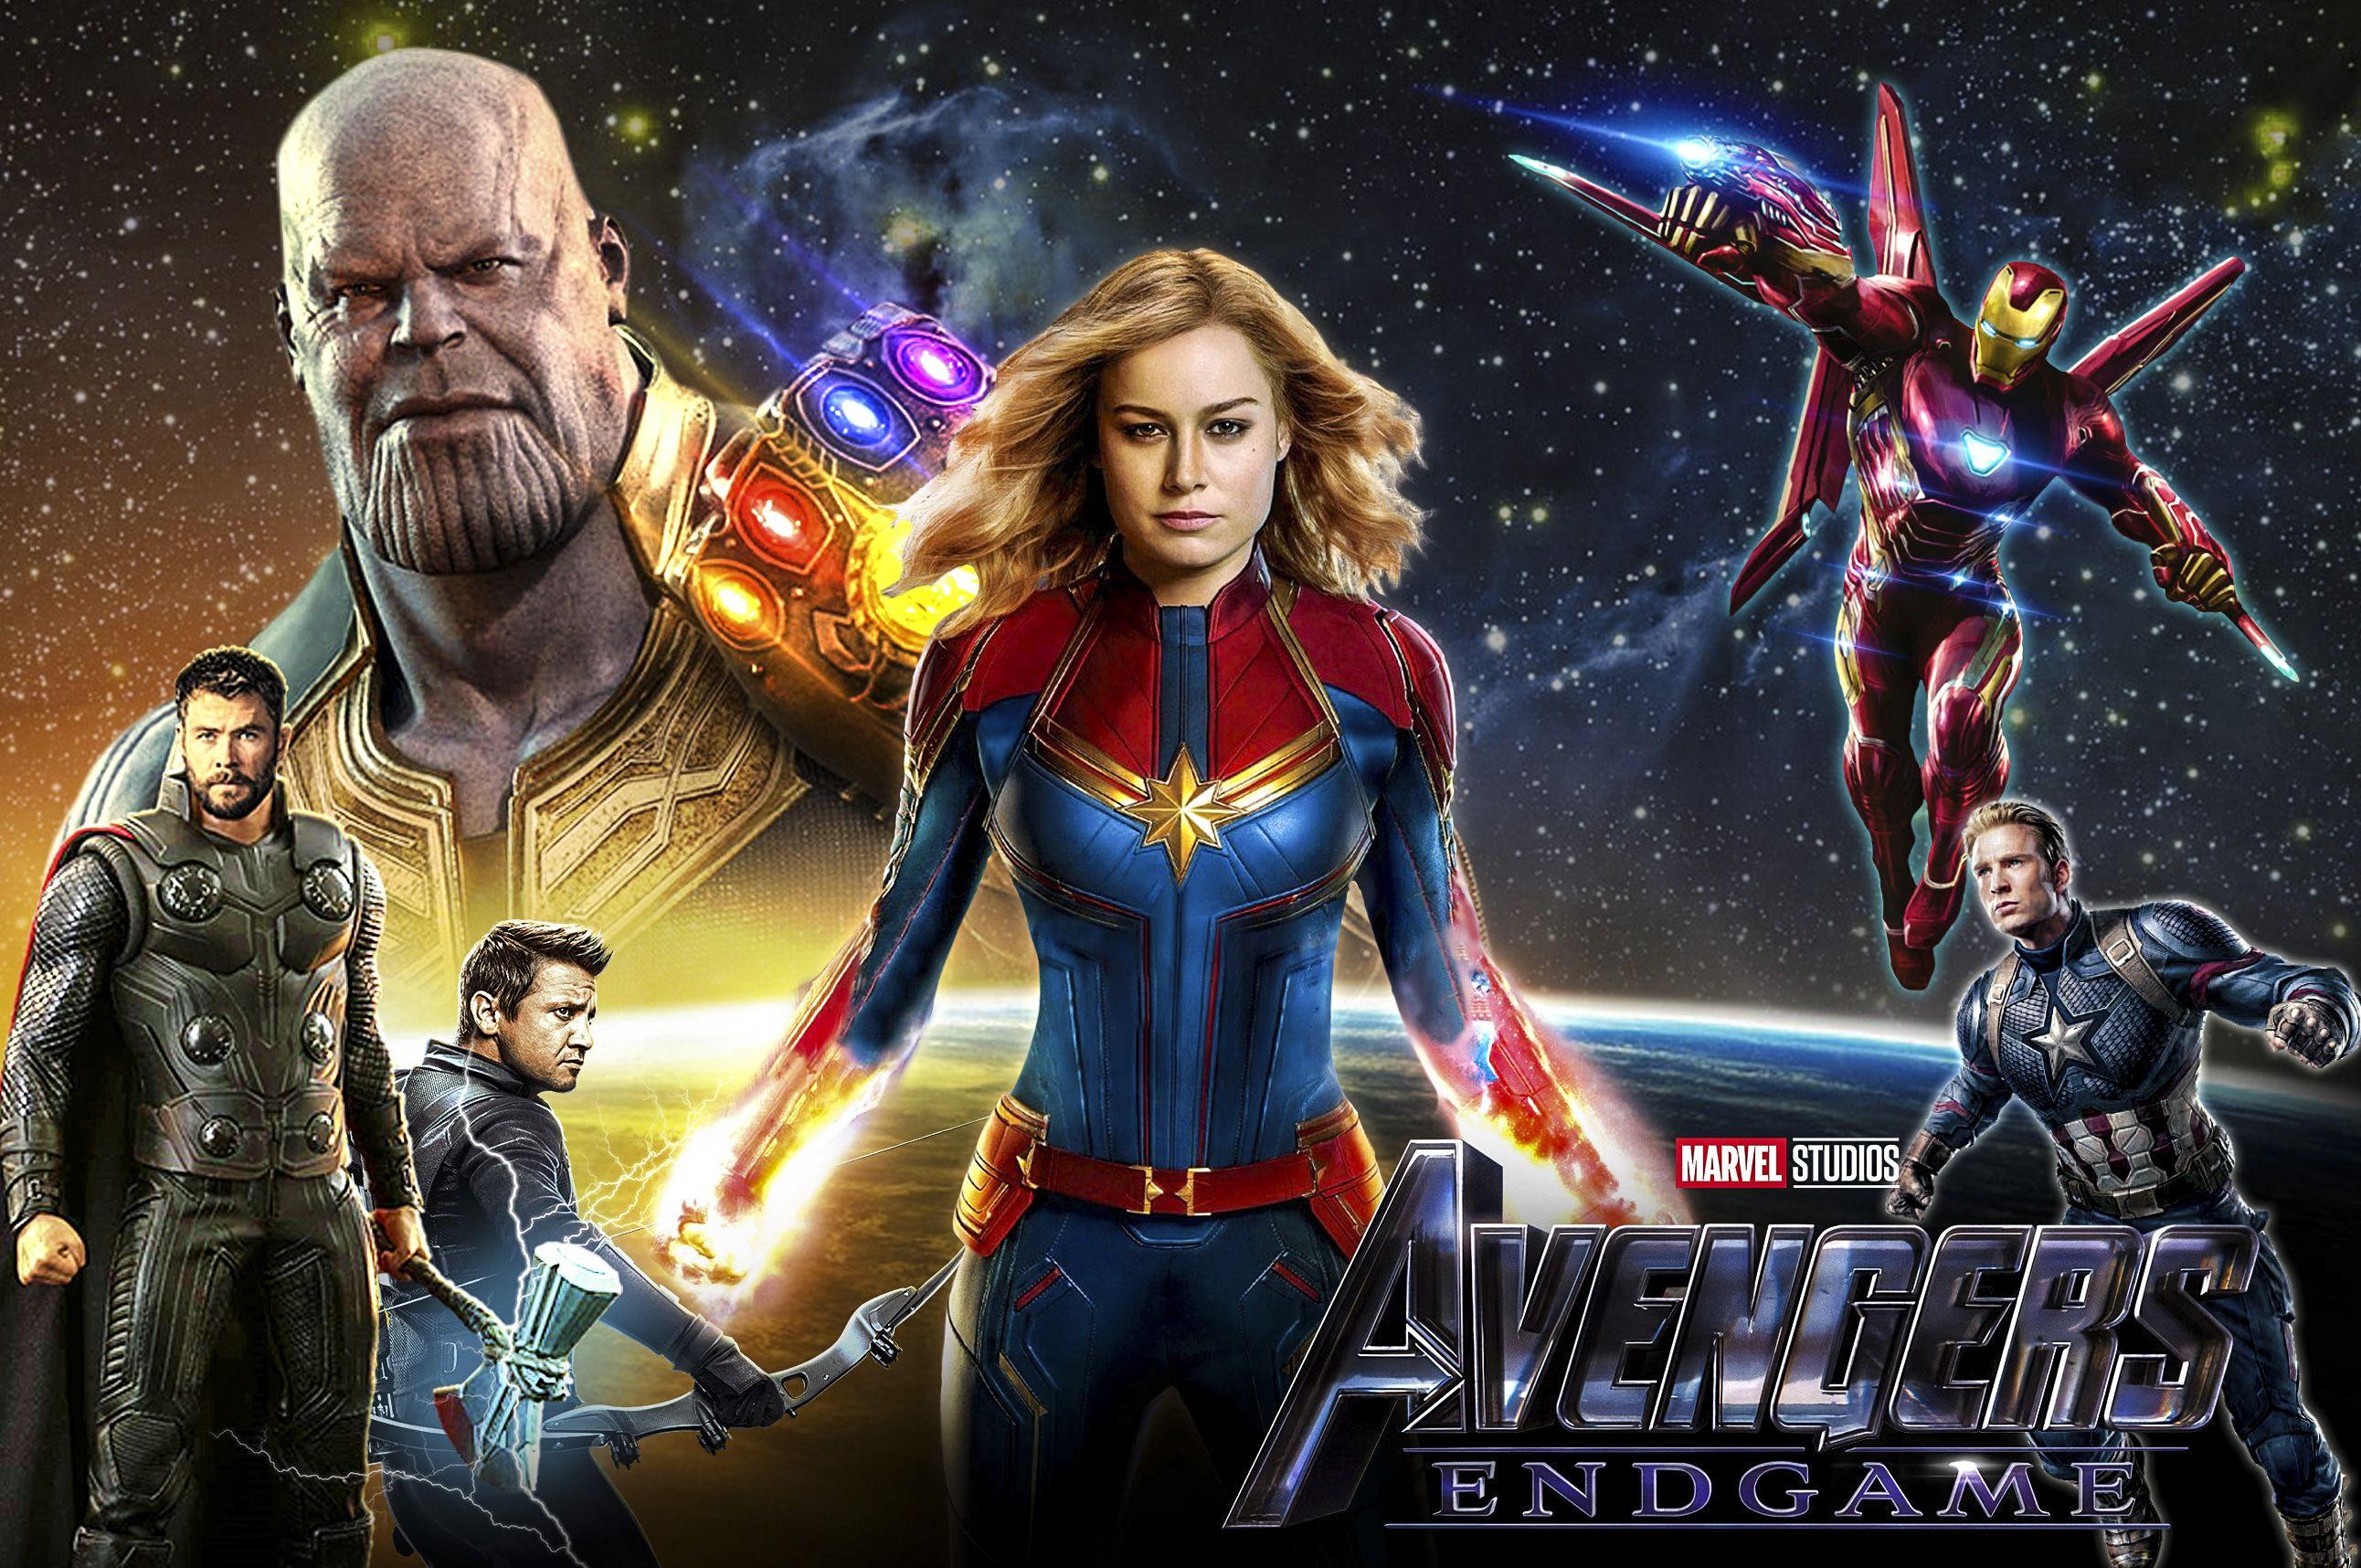 Avengers End Game Artworks 4k Thor Wallpaper, Thanos Wallpaper, Movies Wallpaper, Iron Man Wallpaper,. Marvel Cinematic, Best Superhero Movies, Captain Marvel